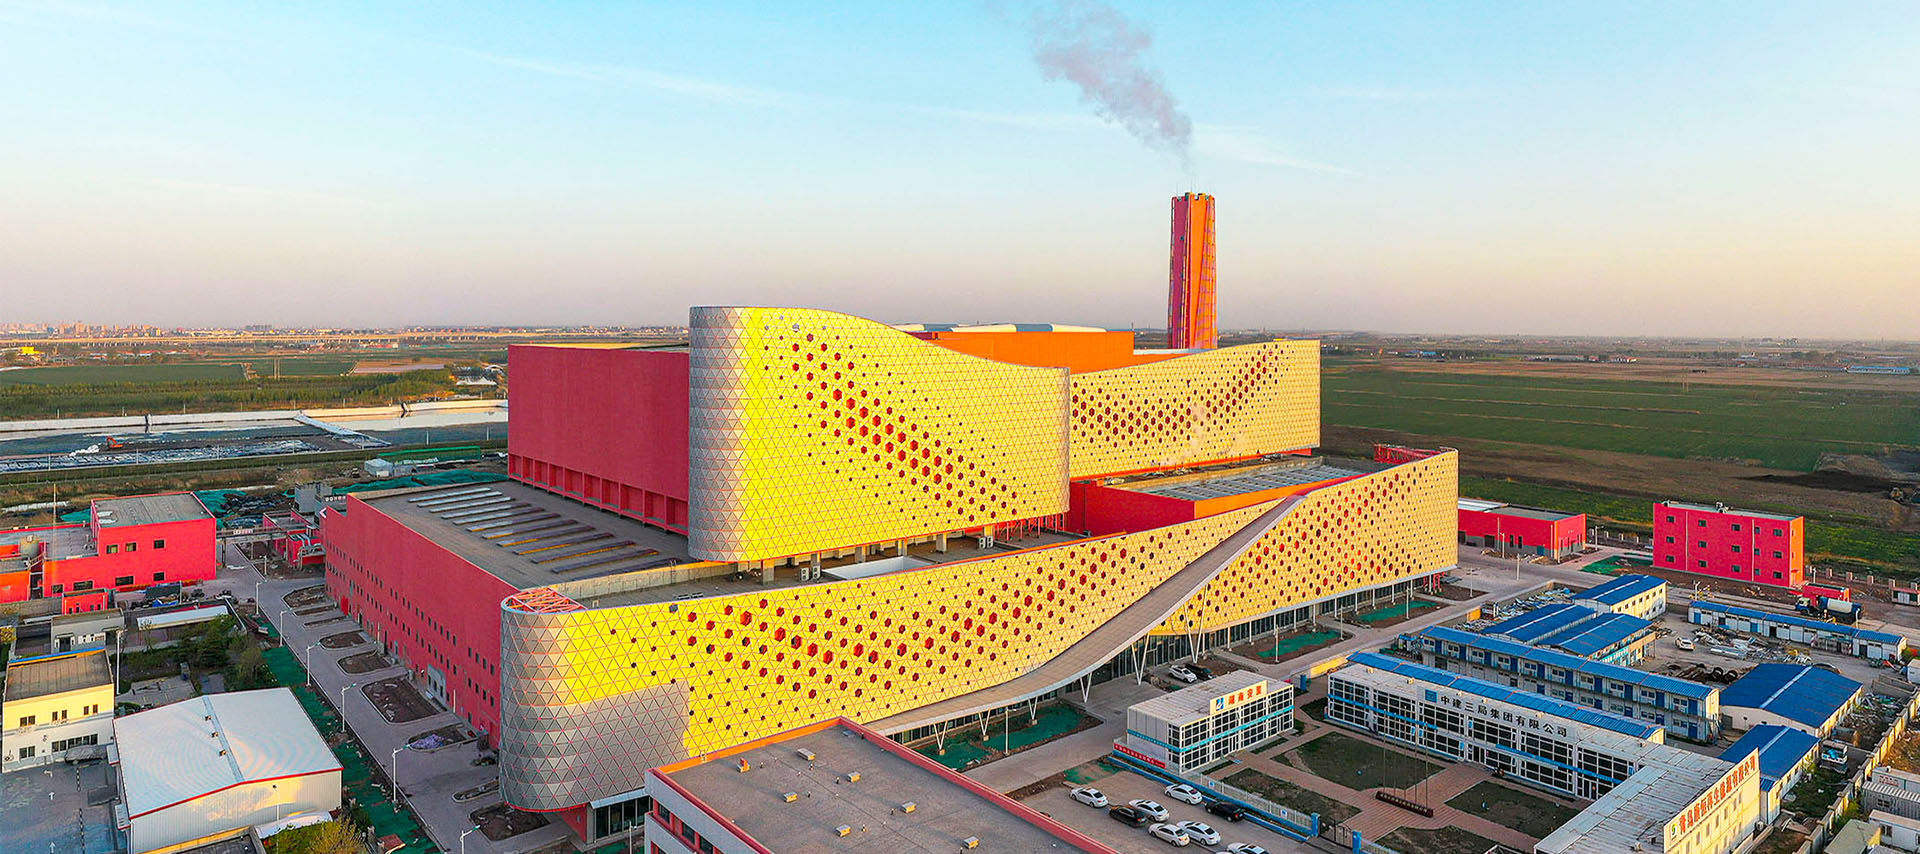 Central Eléctrica de Incineración de Residuos de Xiaojianxi en Qingdao

